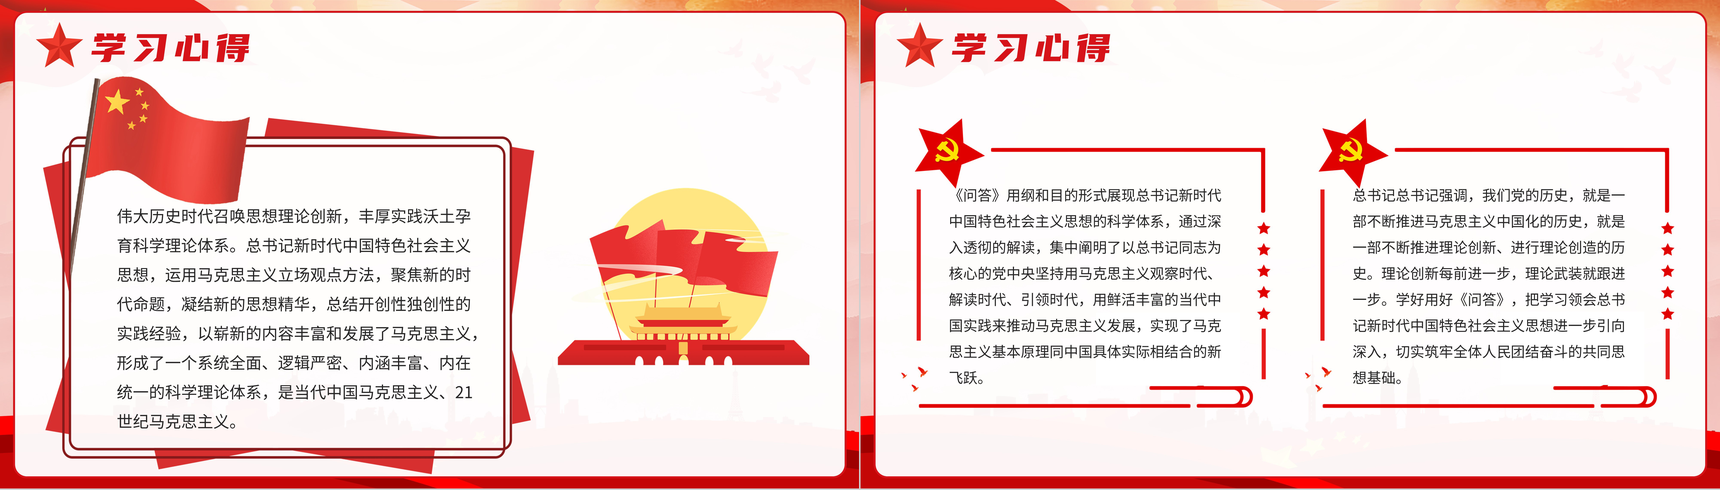 新时代中国特色社会主义思想学习问答思想阐述PPT模板-9